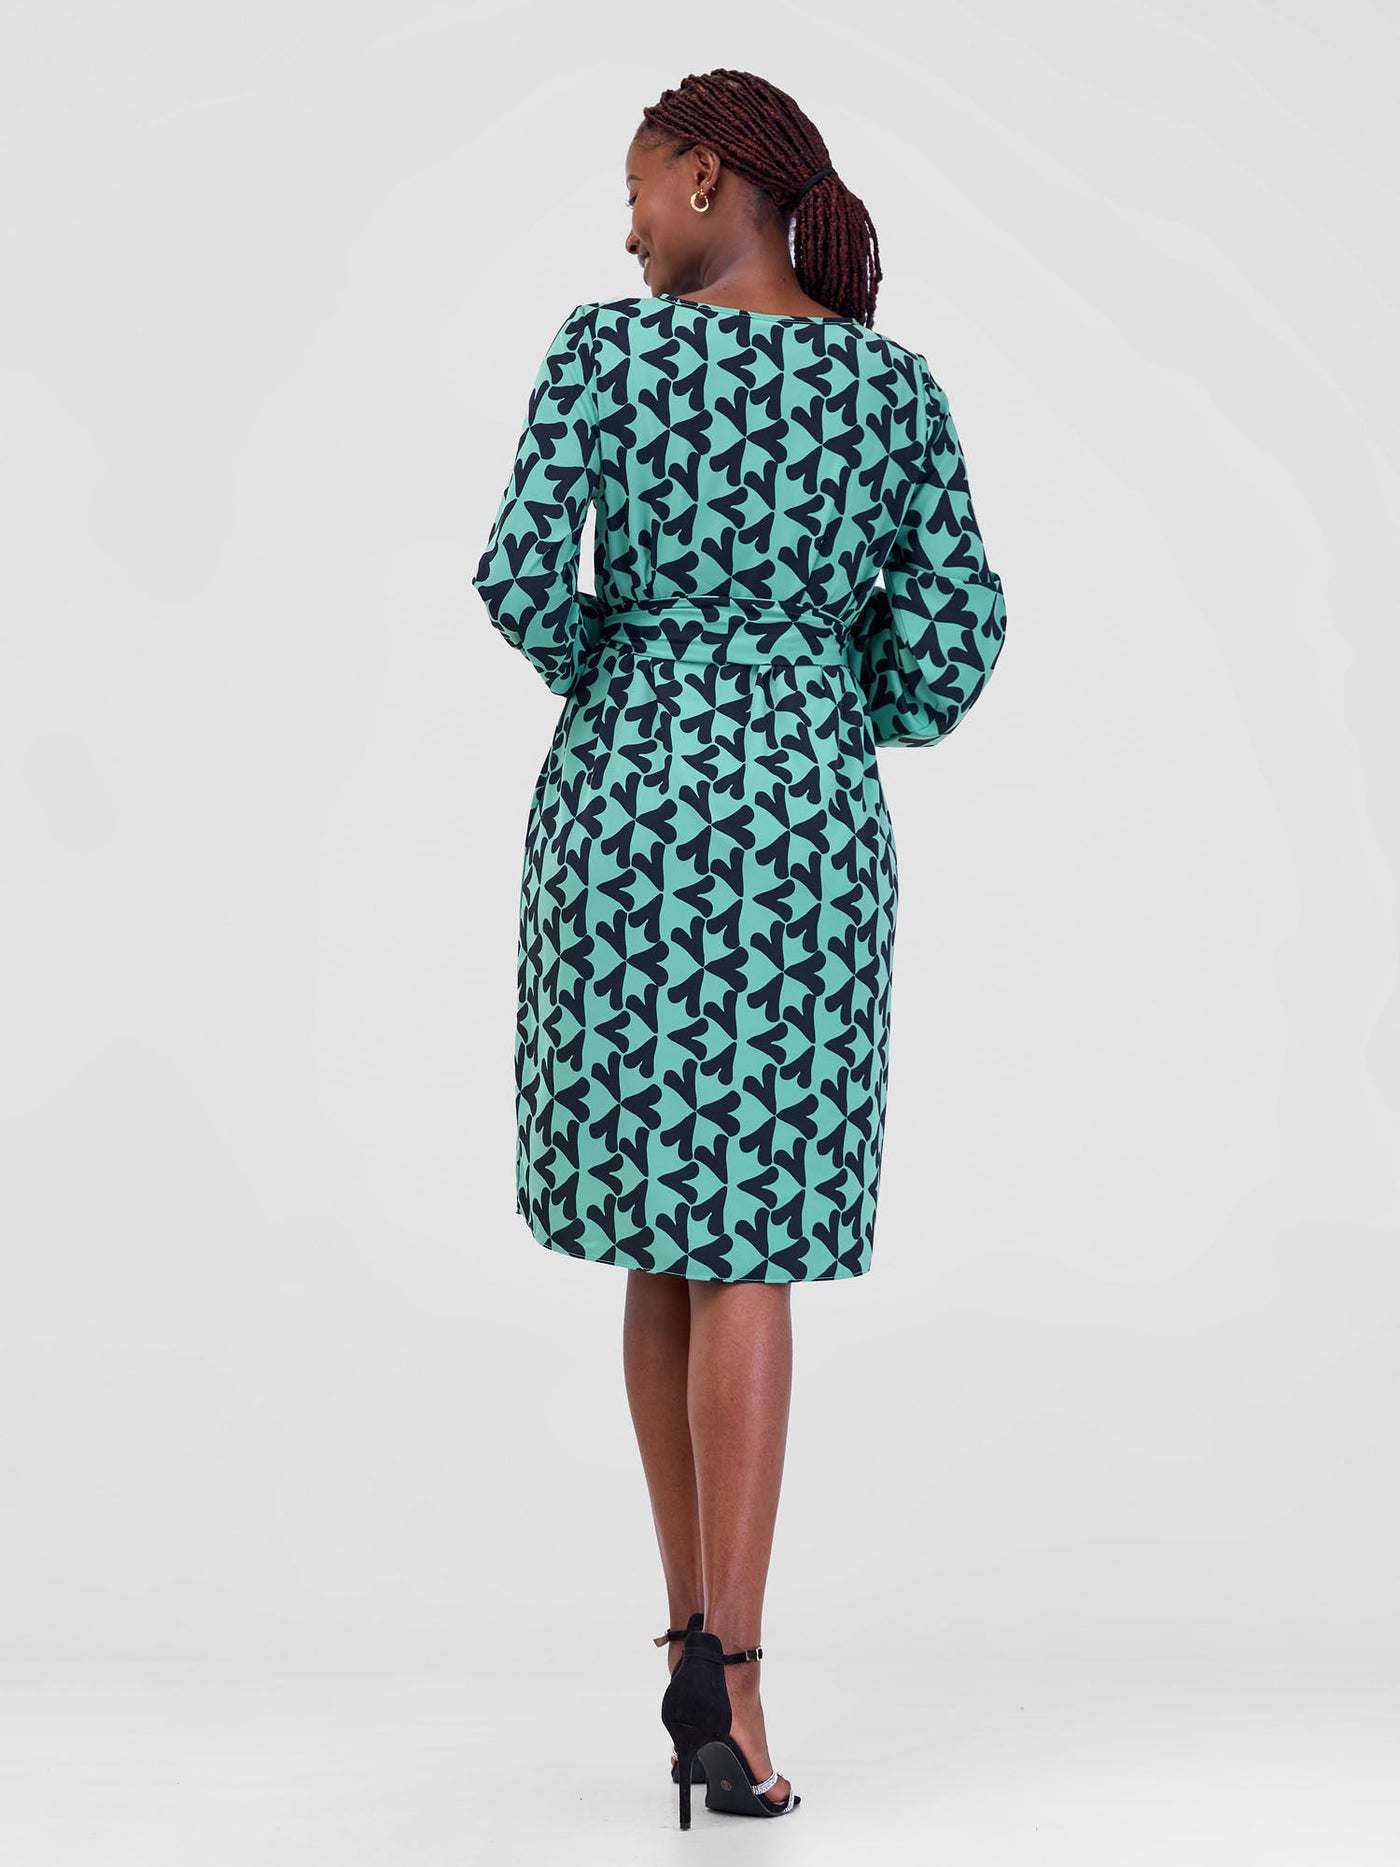 Vivo Zawadi Shift Dress - Lime / Black Zawi Print - Shopzetu